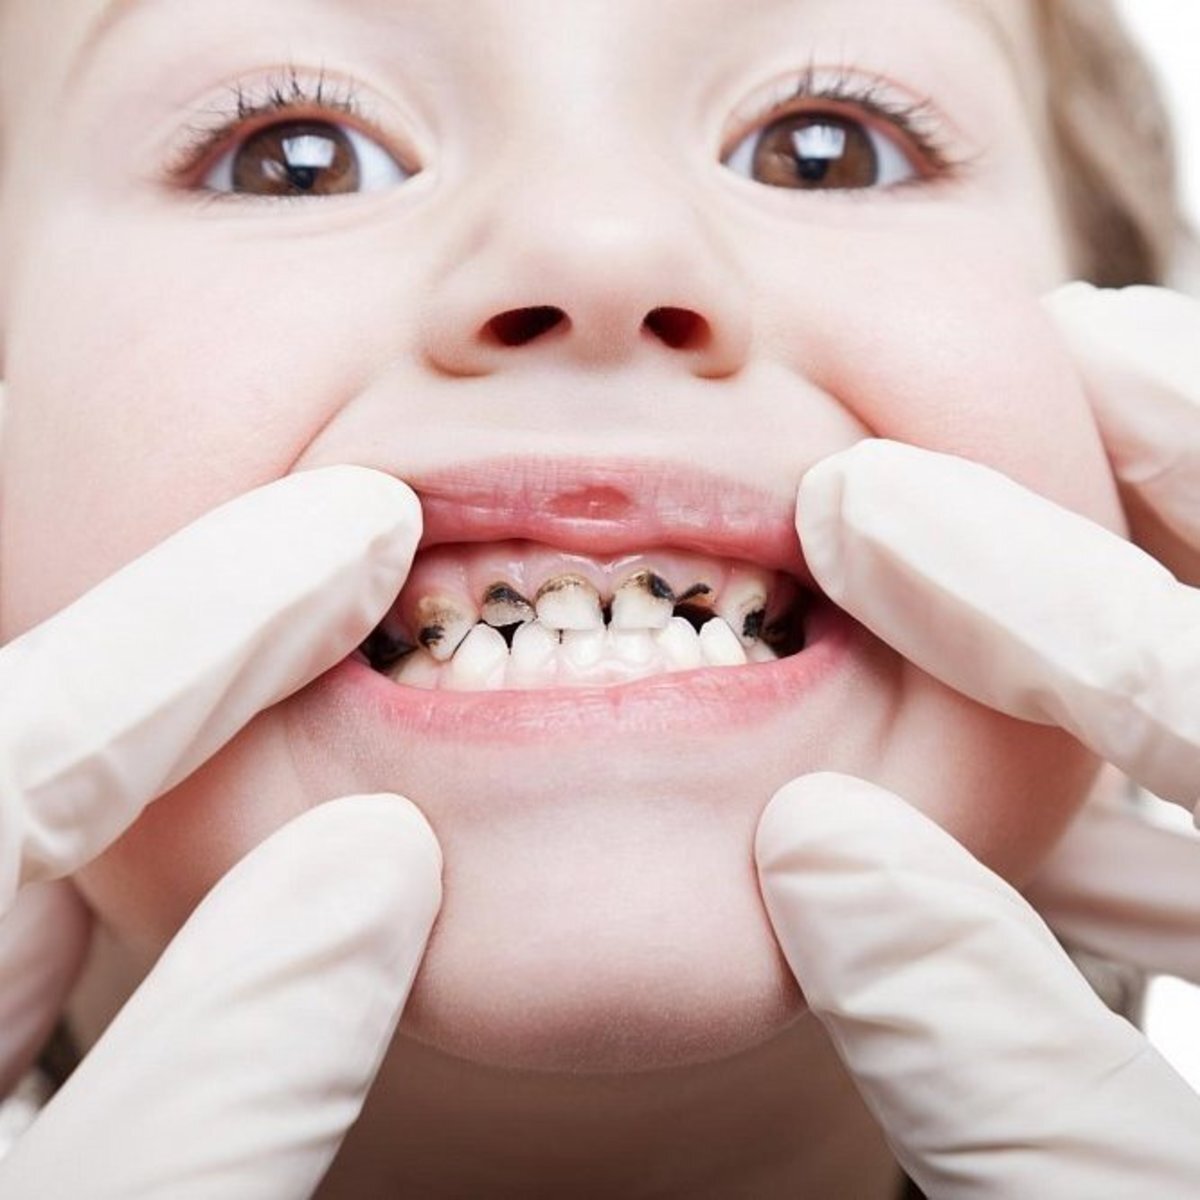 
👋 Привет! В этой статье мы рассмотрим одну из распространенных проблем устной гигиены - черные пятна на зубах.